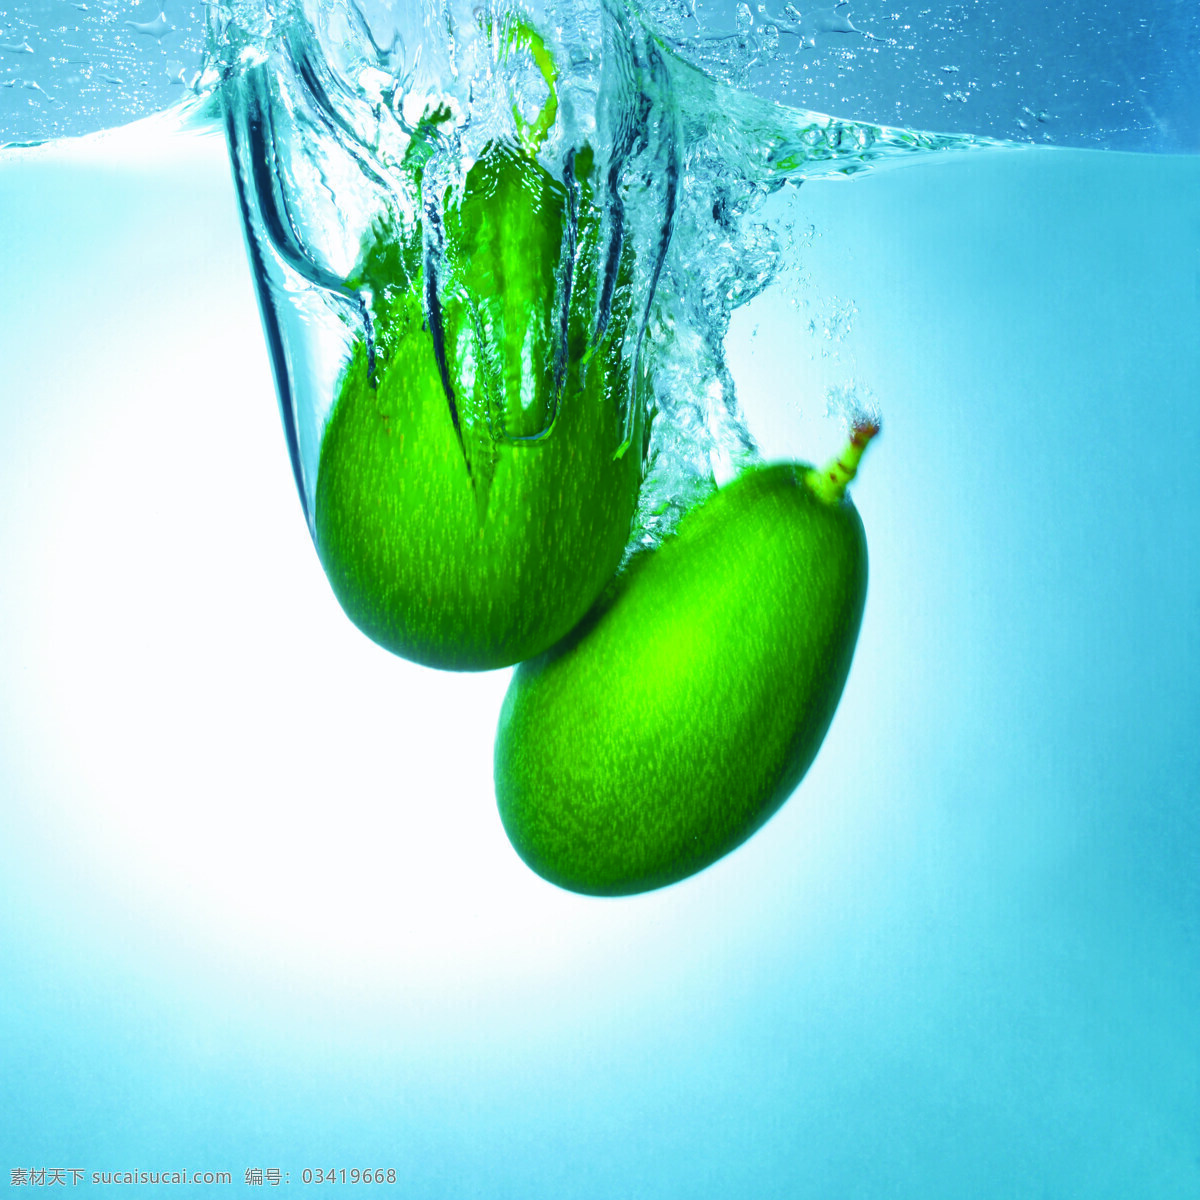 水下的木瓜 设计素材 水果 水波纹 水花四溅 水底 木瓜 两个木瓜 摄影素材 生物世界